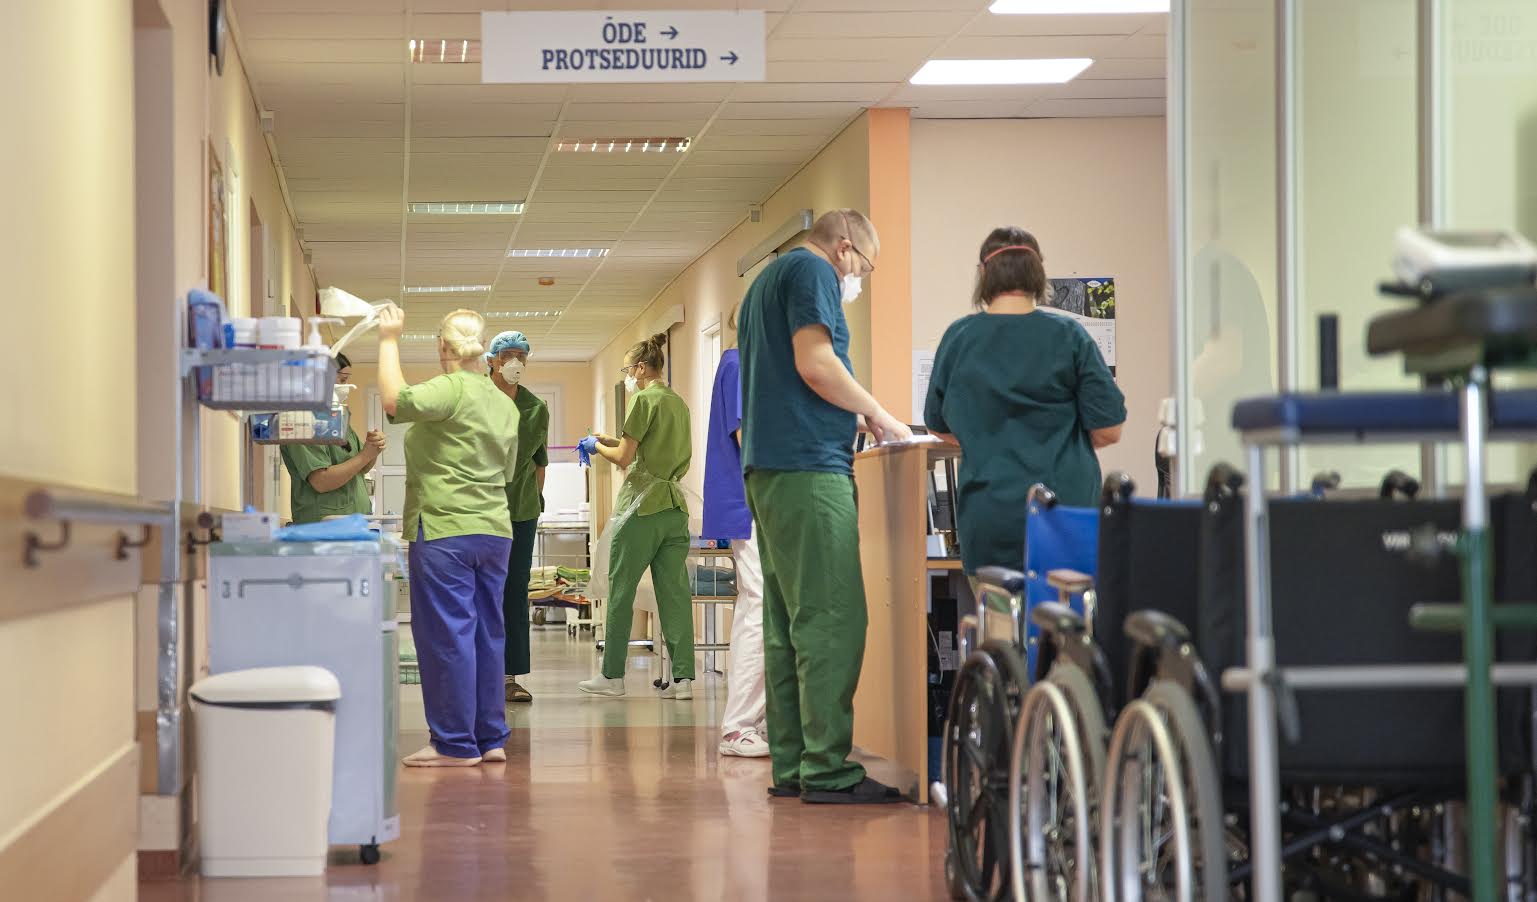 Lõuna-Eesti haigla Covid-osakonnas saab praegu hapnikuravi 26 koroonahaiget inimest. Foto: AIGAR NAGEL